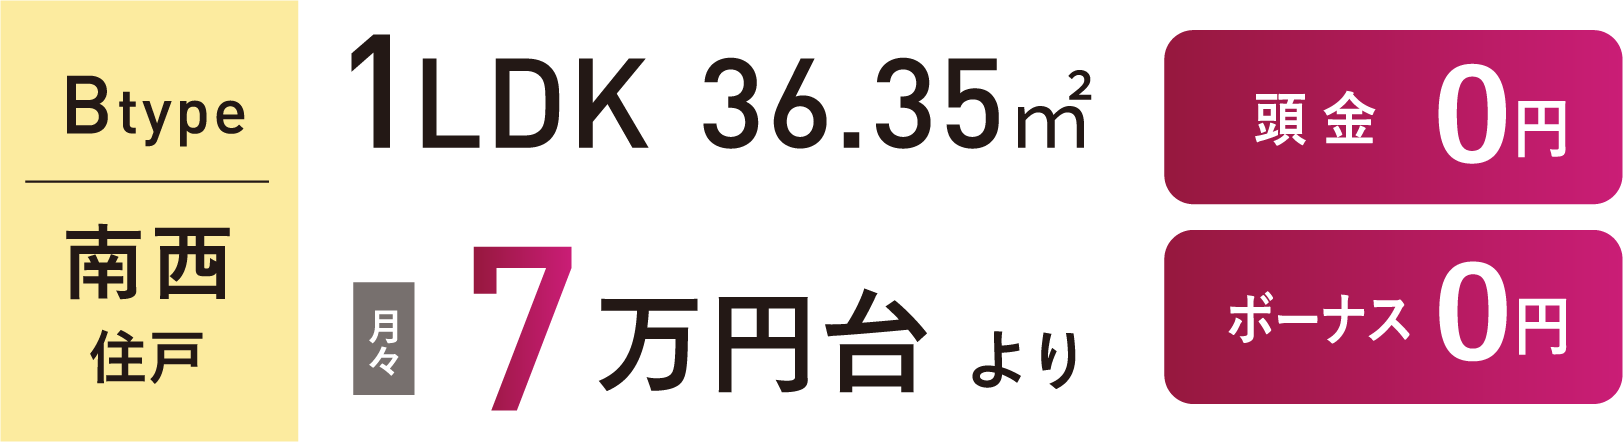 Btype 1LDK 36.35㎡月々5万円台より購入可能